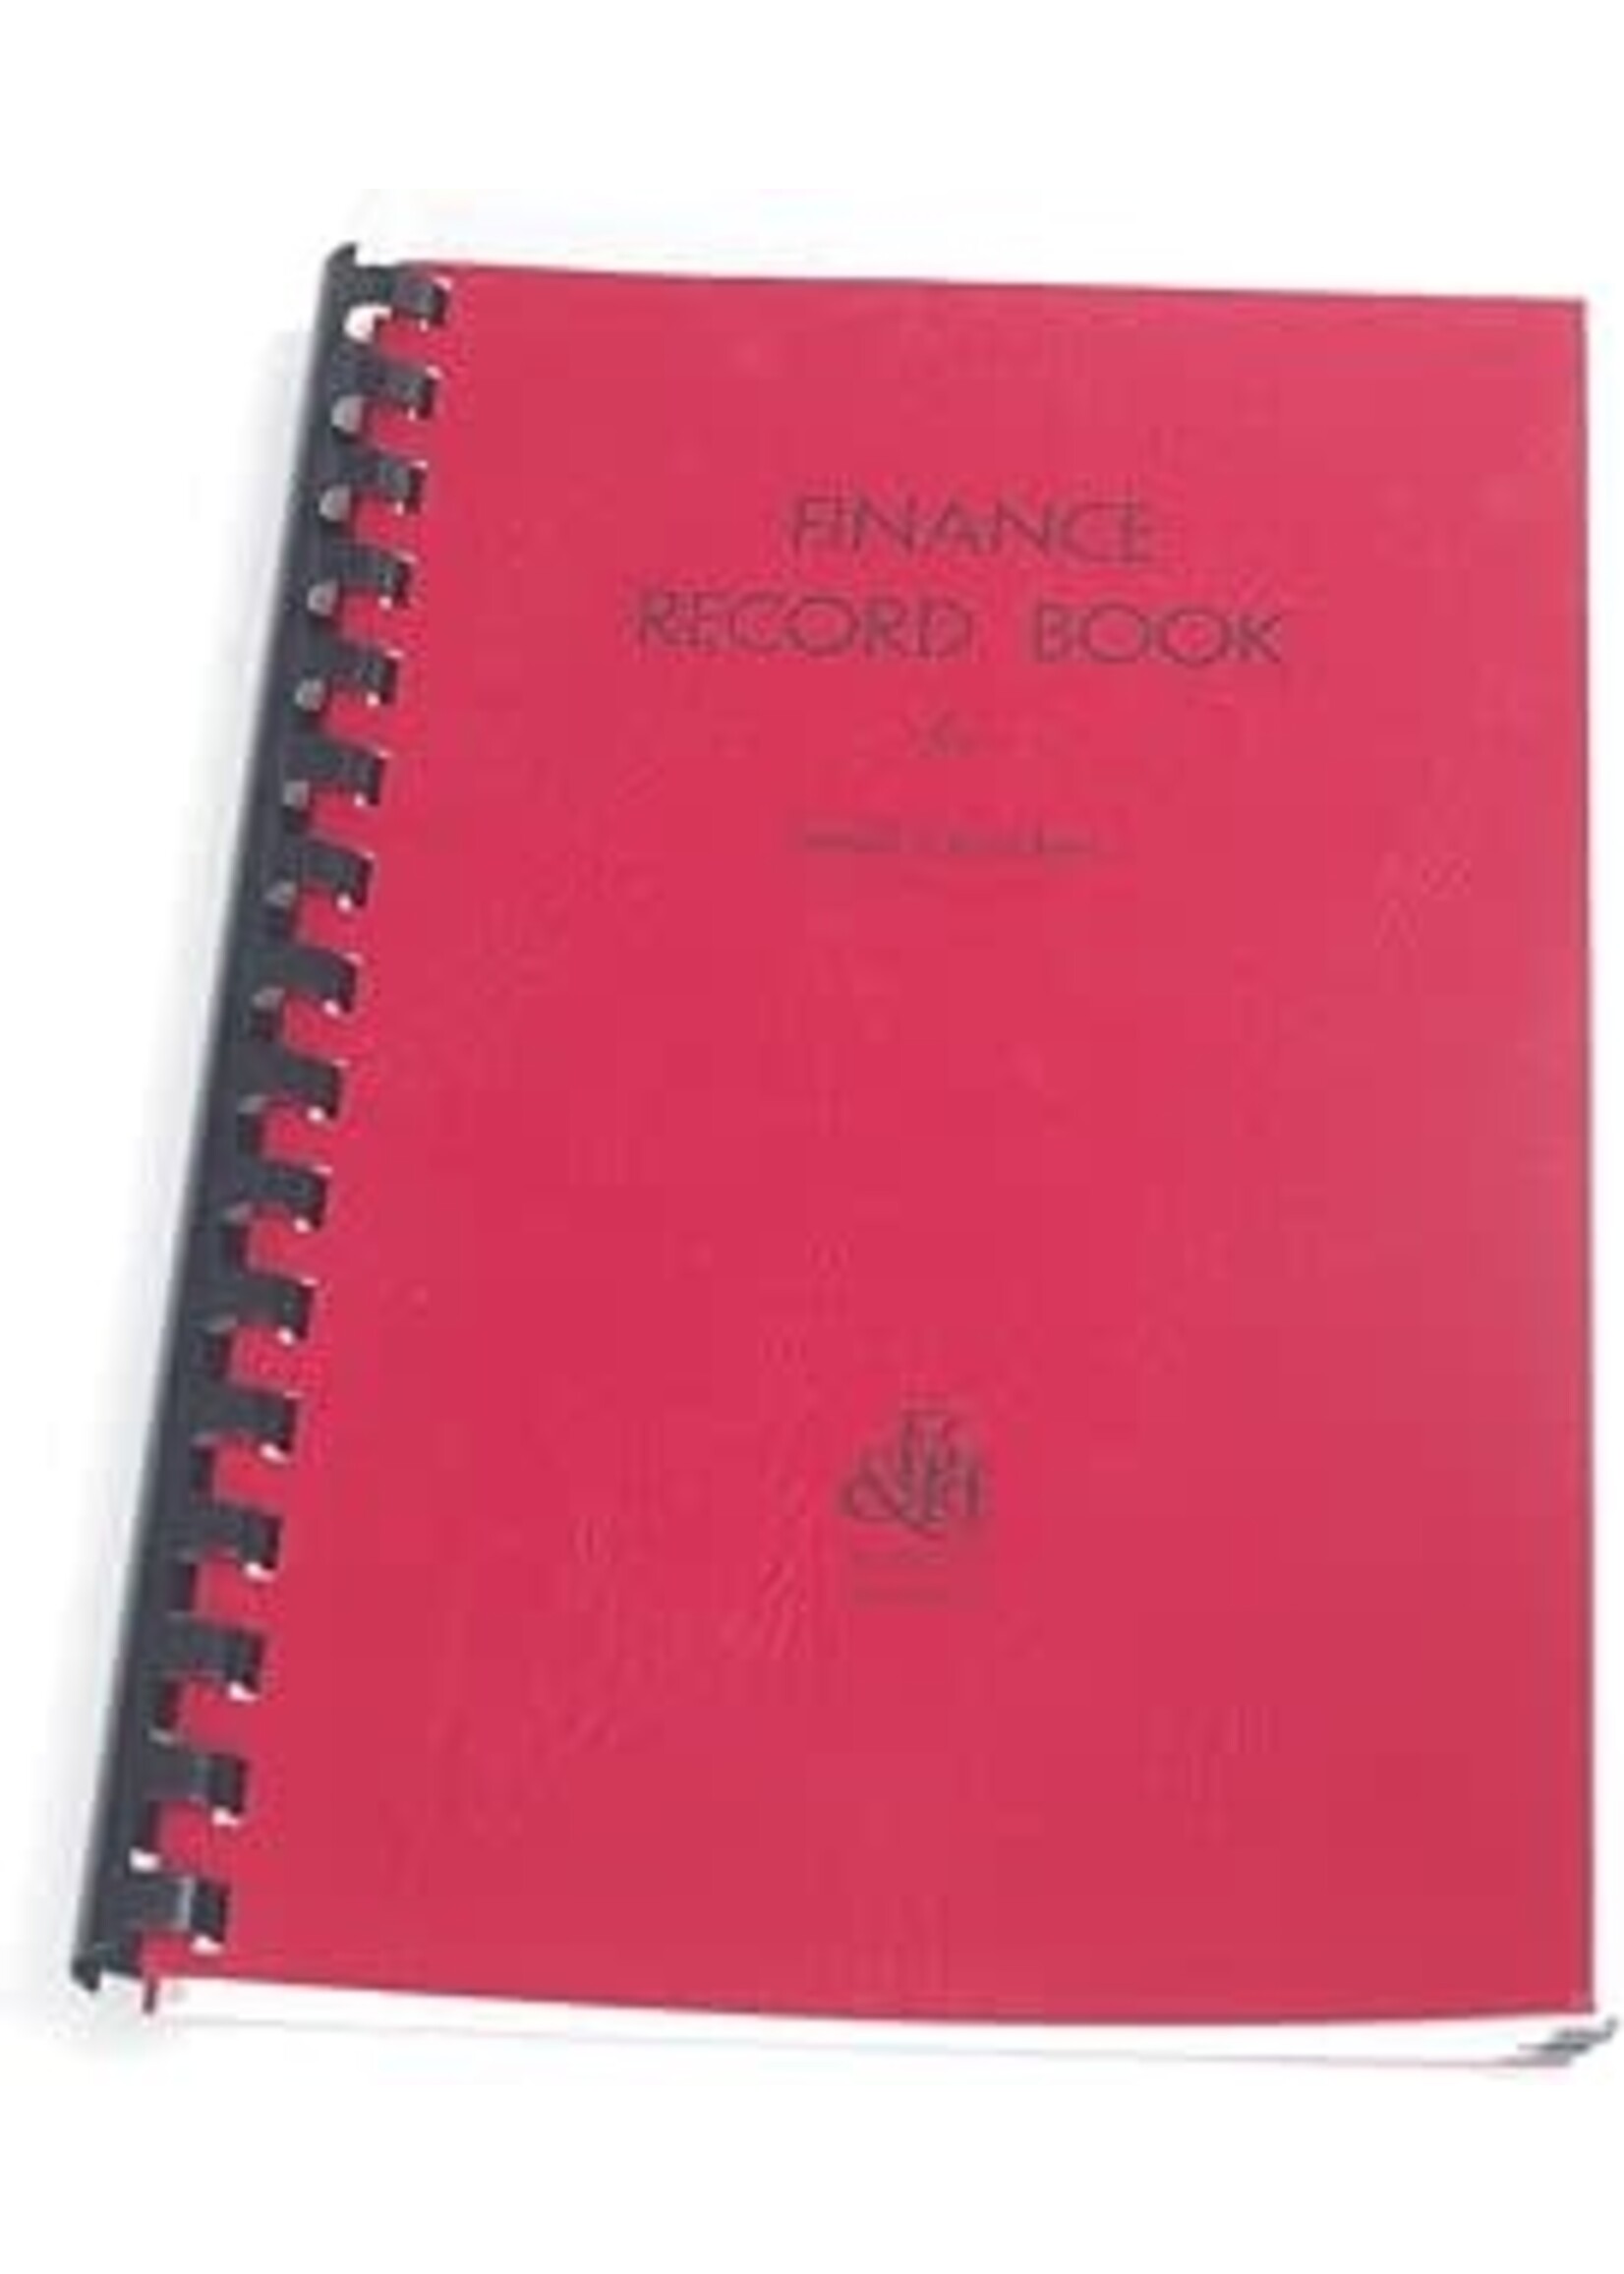 Finance Record Book